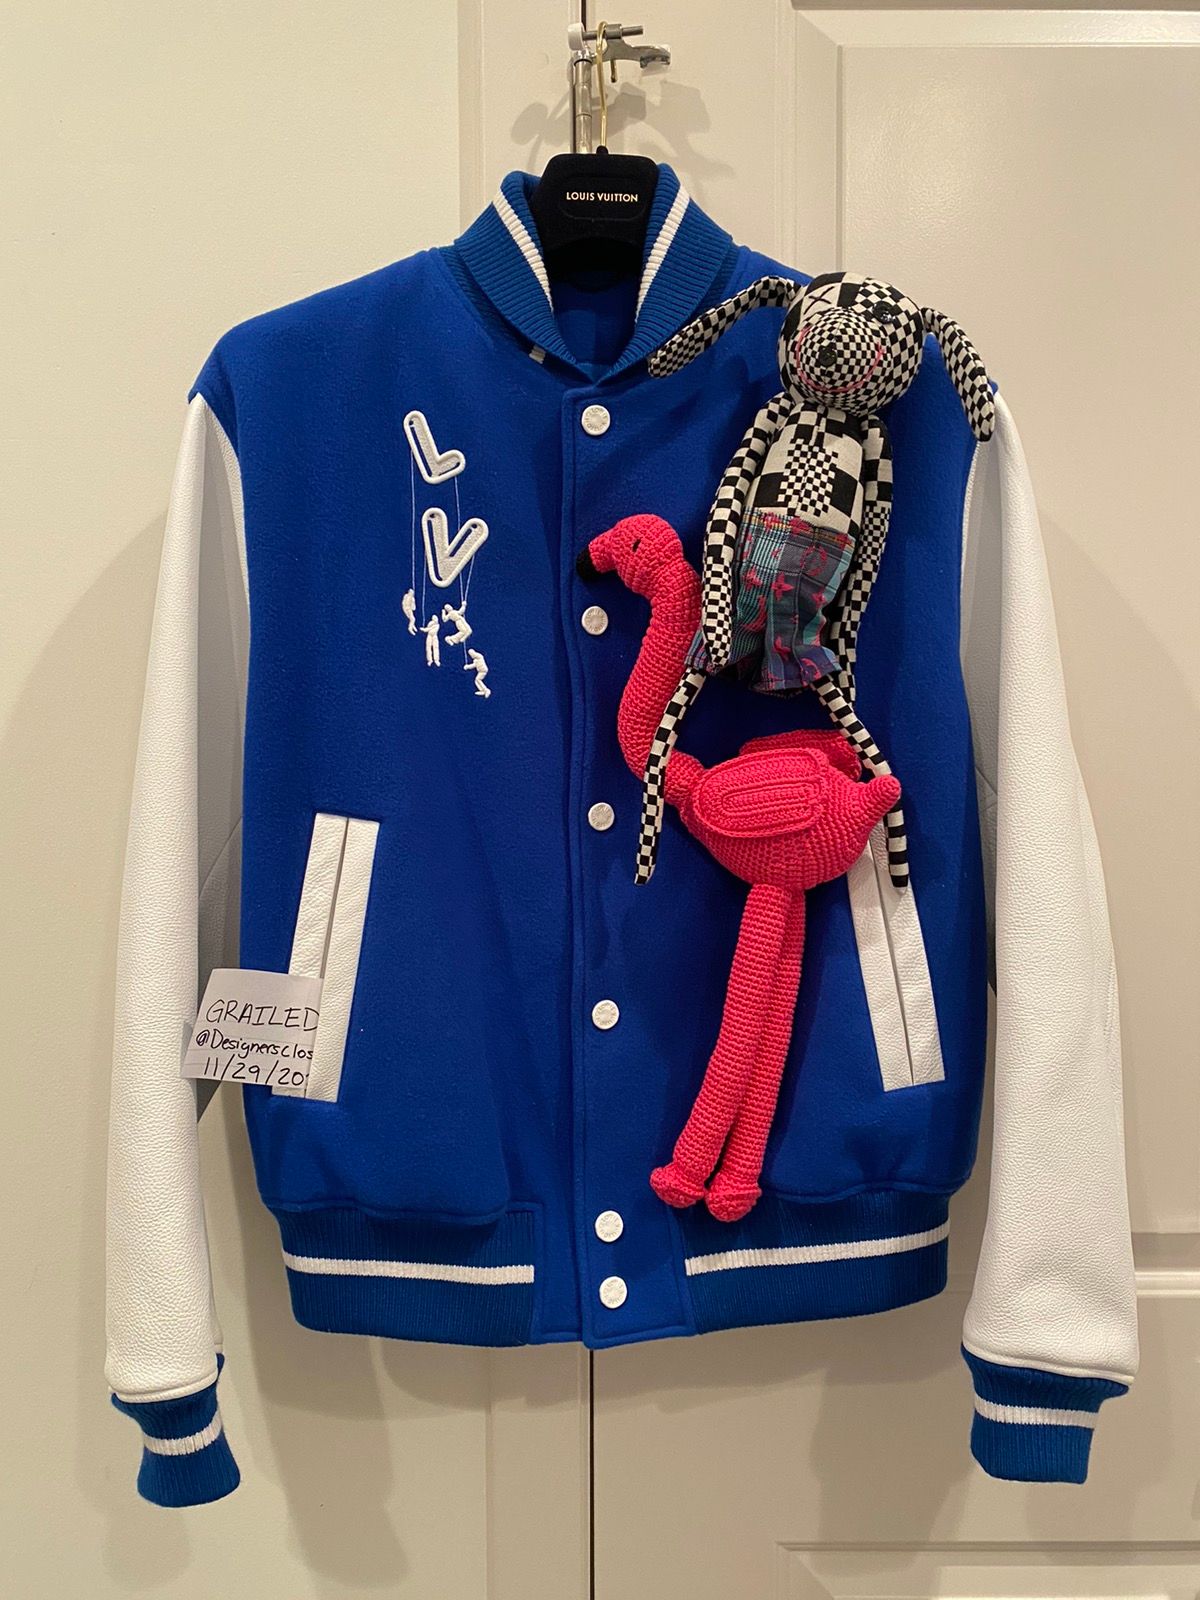 Louis Vuitton, Jackets & Coats, Louis Vuitton Puppet Baseball Jacket